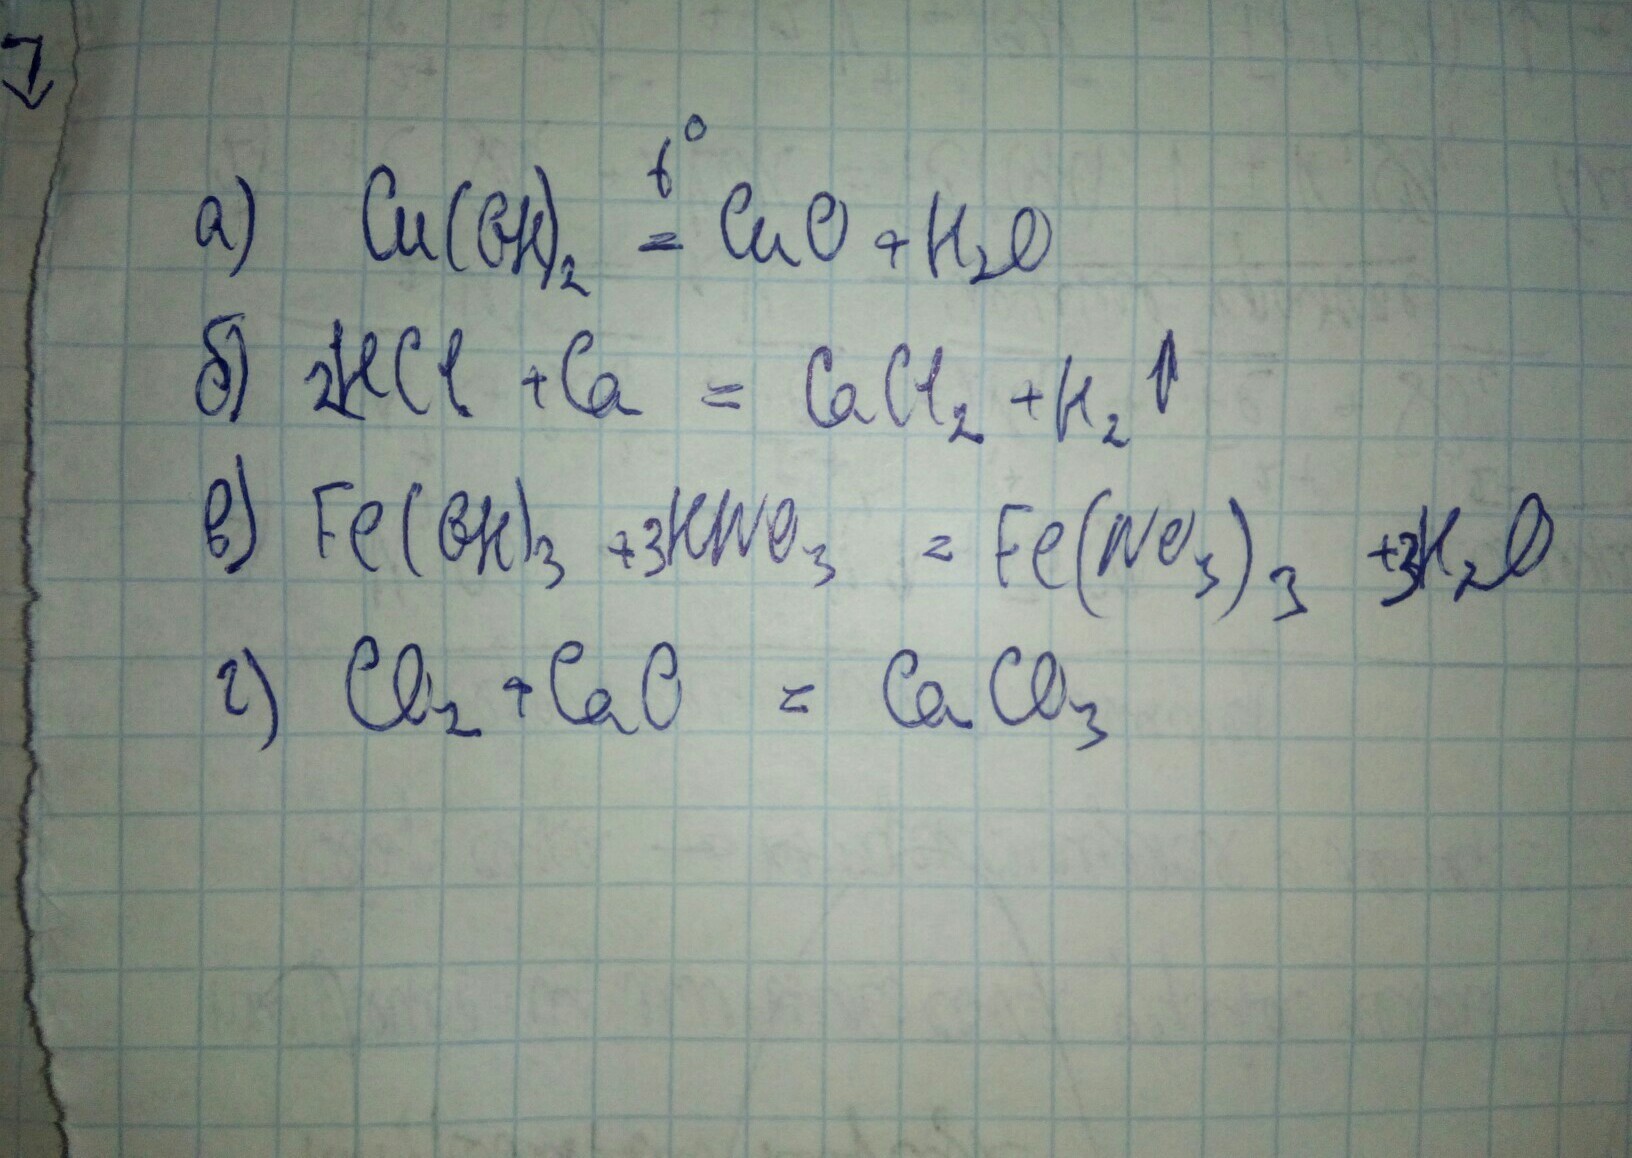 Закончите уравнения ca hcl. Fe(Oh)3 +HN. Feoh no3 =2 Fe Oh 3. Feoh3 hn03. CA Oh 2 HCL уравнение.